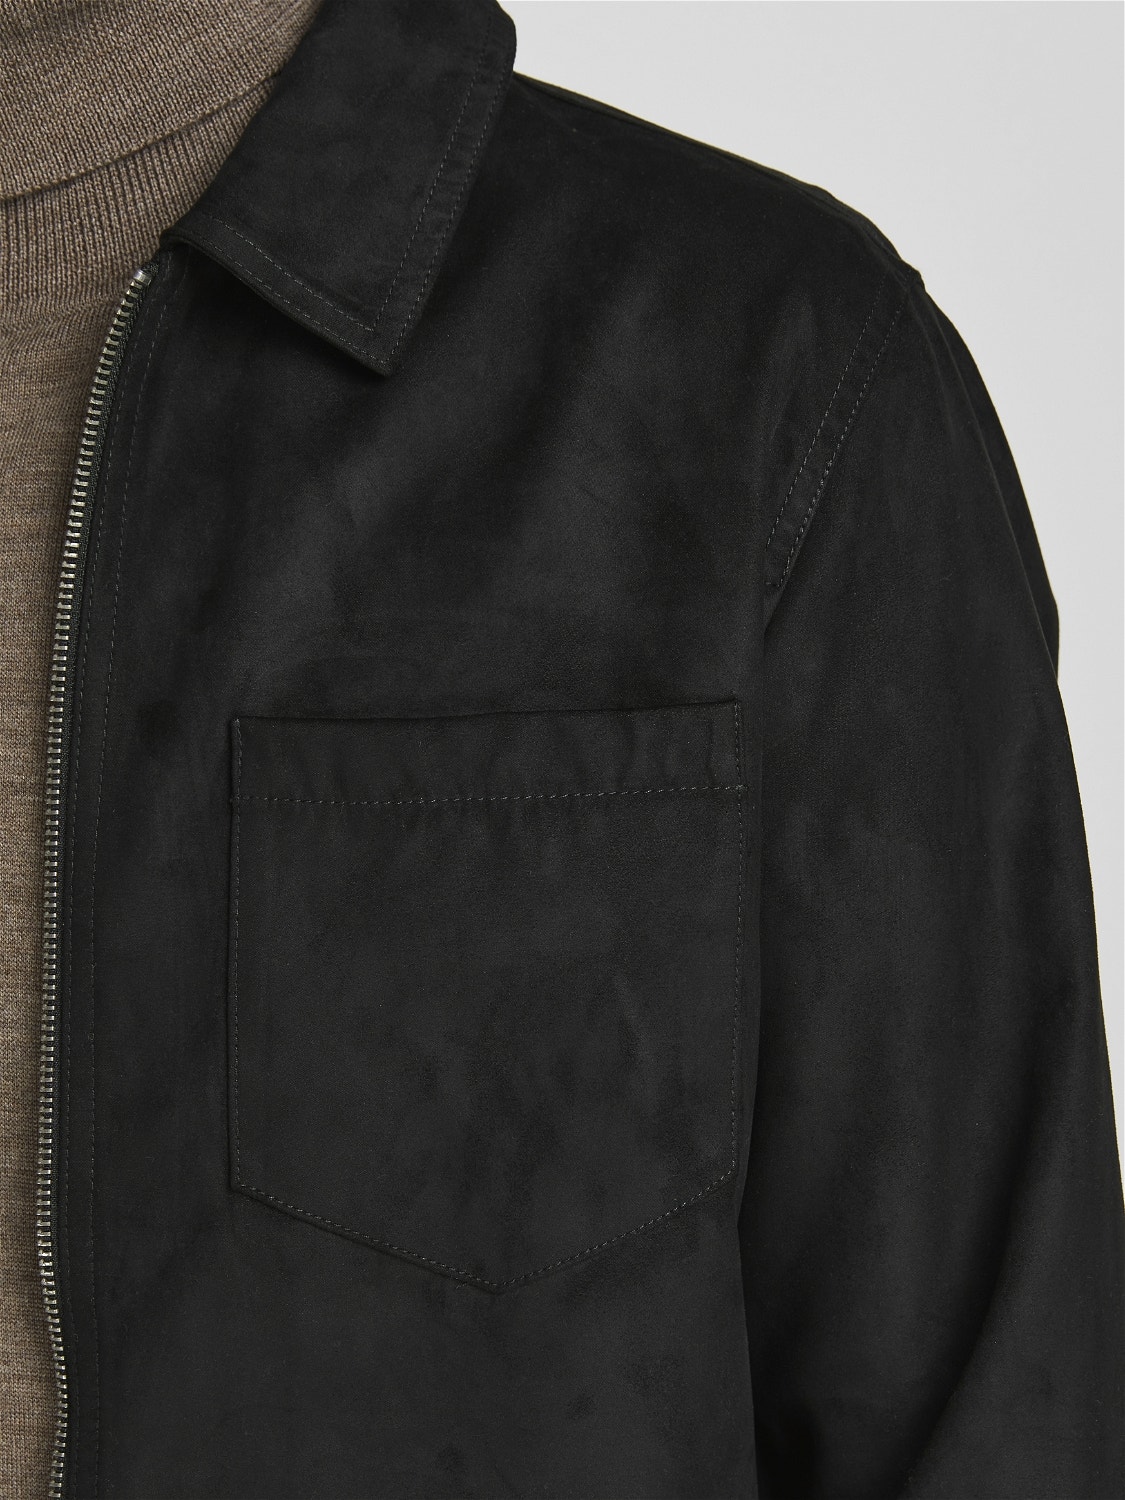 Jack & Jones Hybrid jacket -Black - 12188637